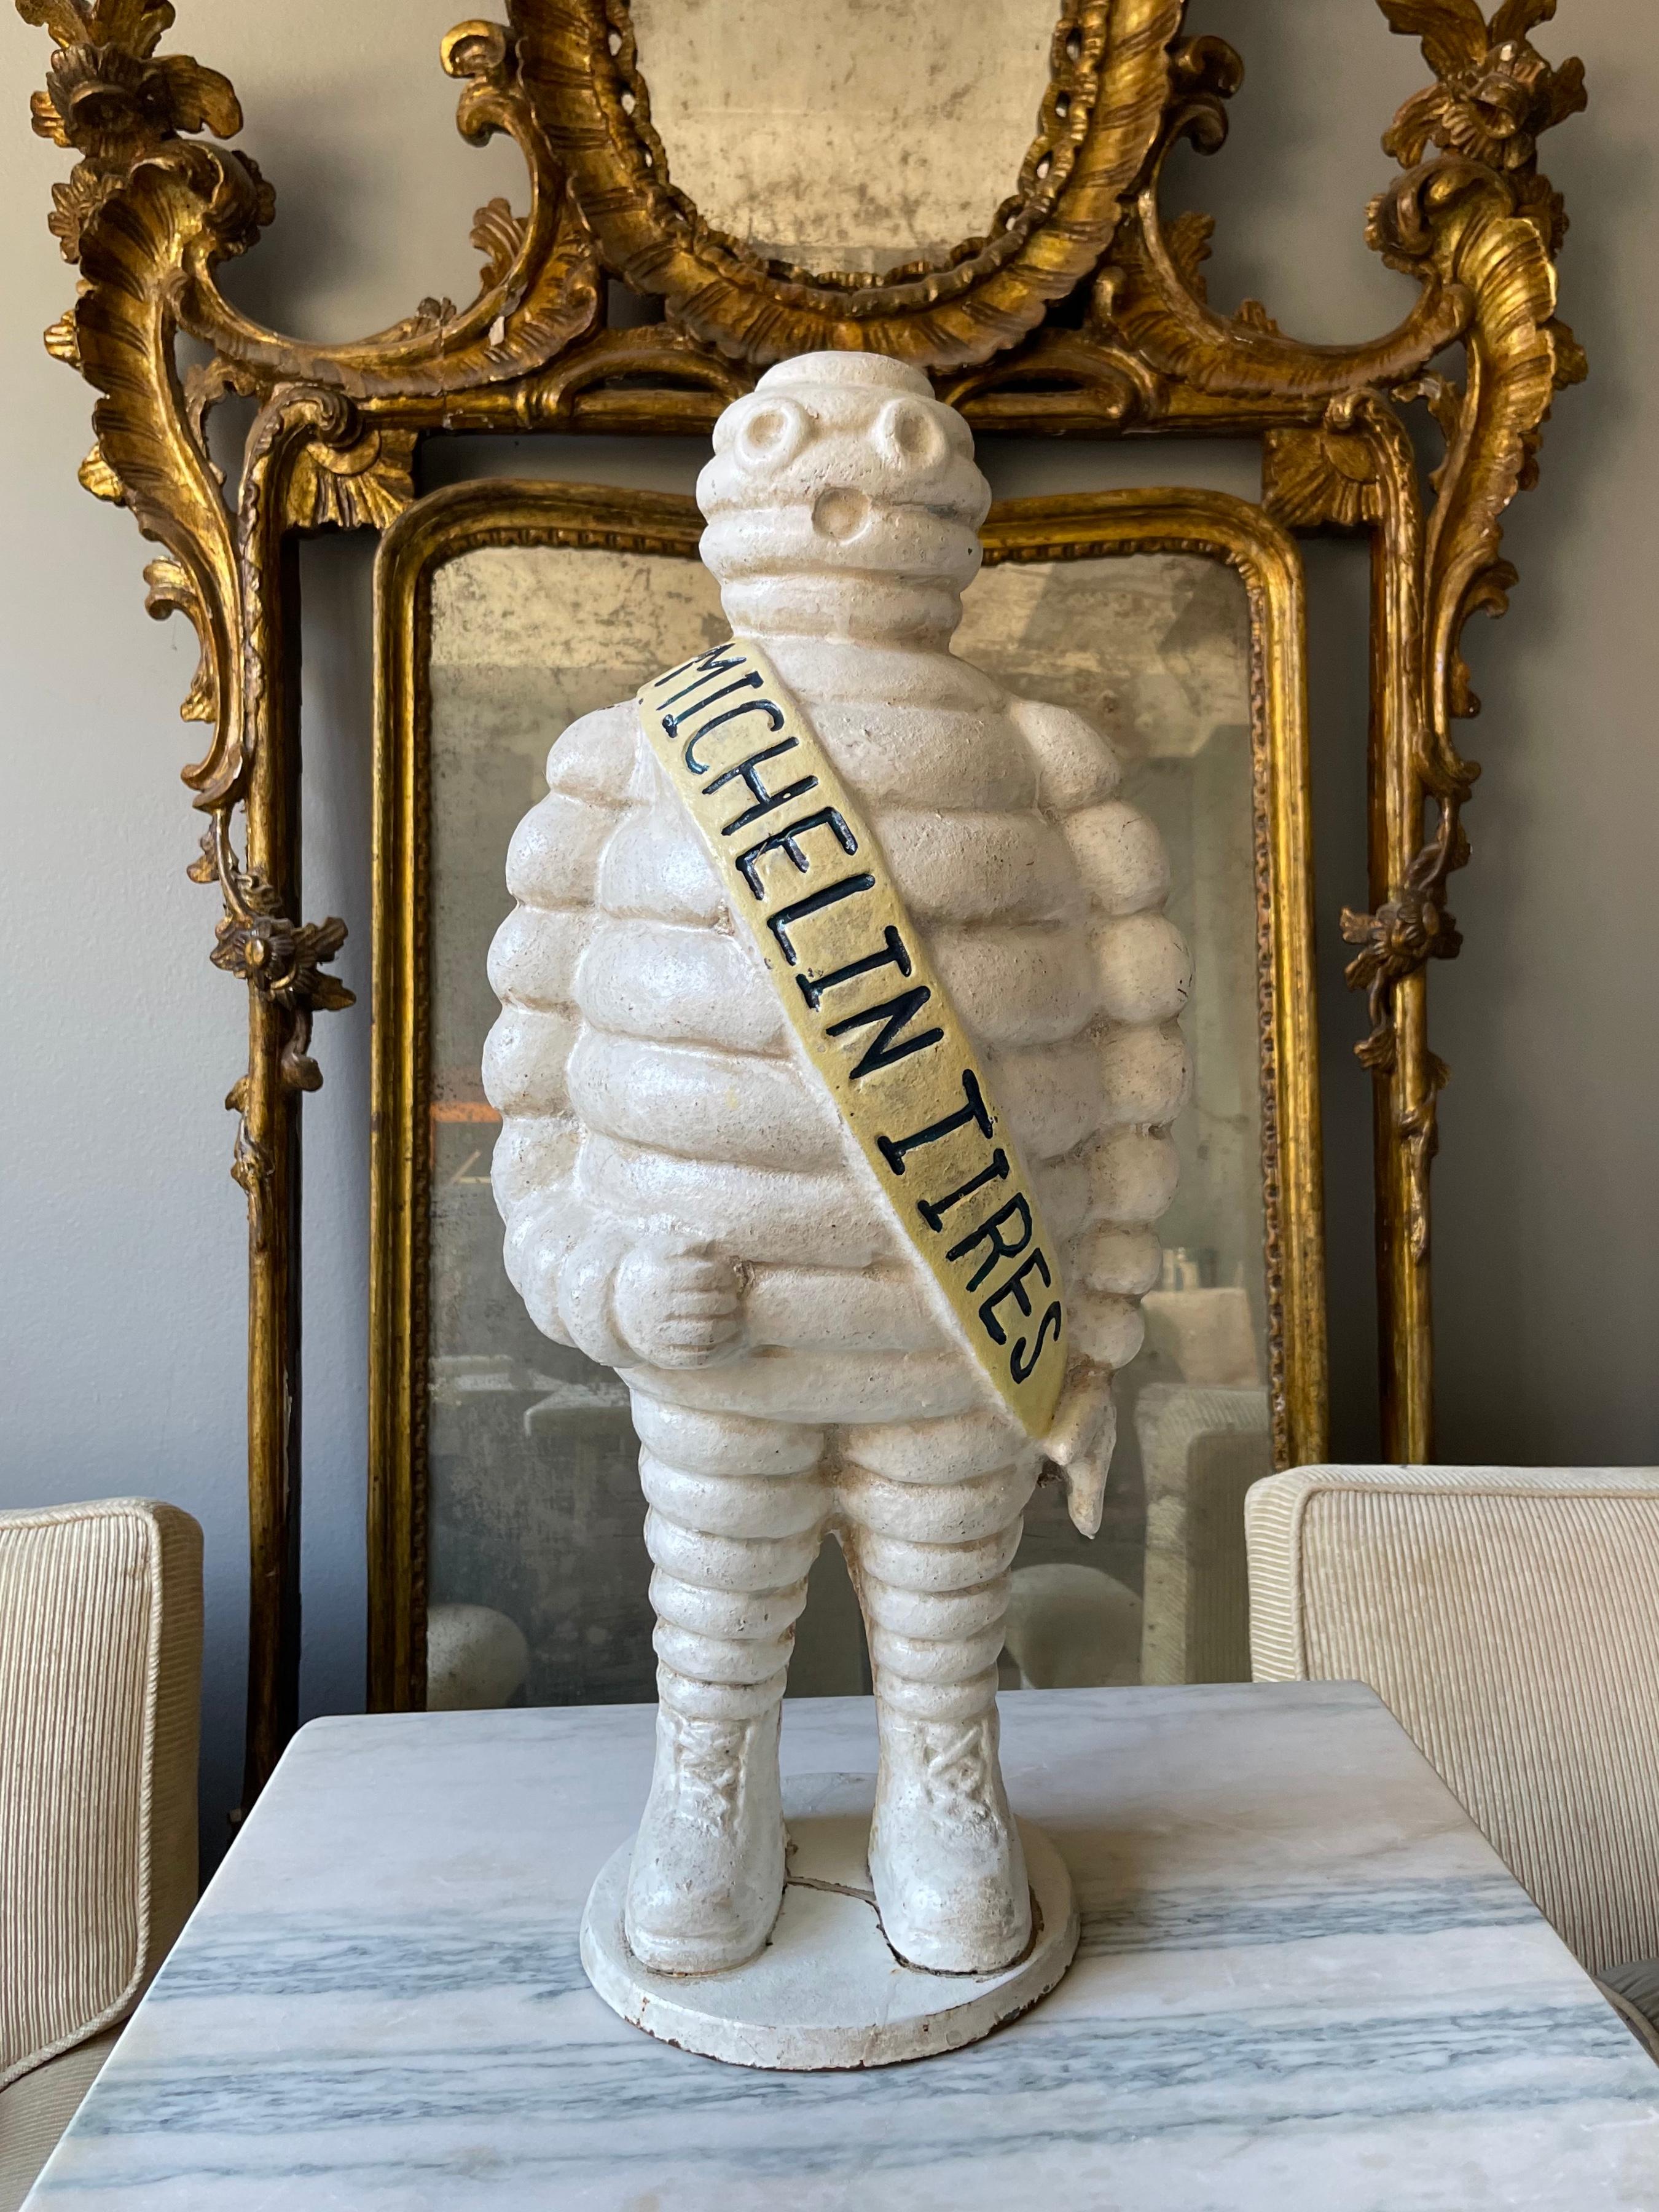 Bibendum Michelin-Männchen Werbeskulptur. Original weiß lackierte gusseiserne Bibendum-Figur aus der Mitte des letzten Jahrhunderts. England, ca. 1960er Jahre.
Abmessungen: 10